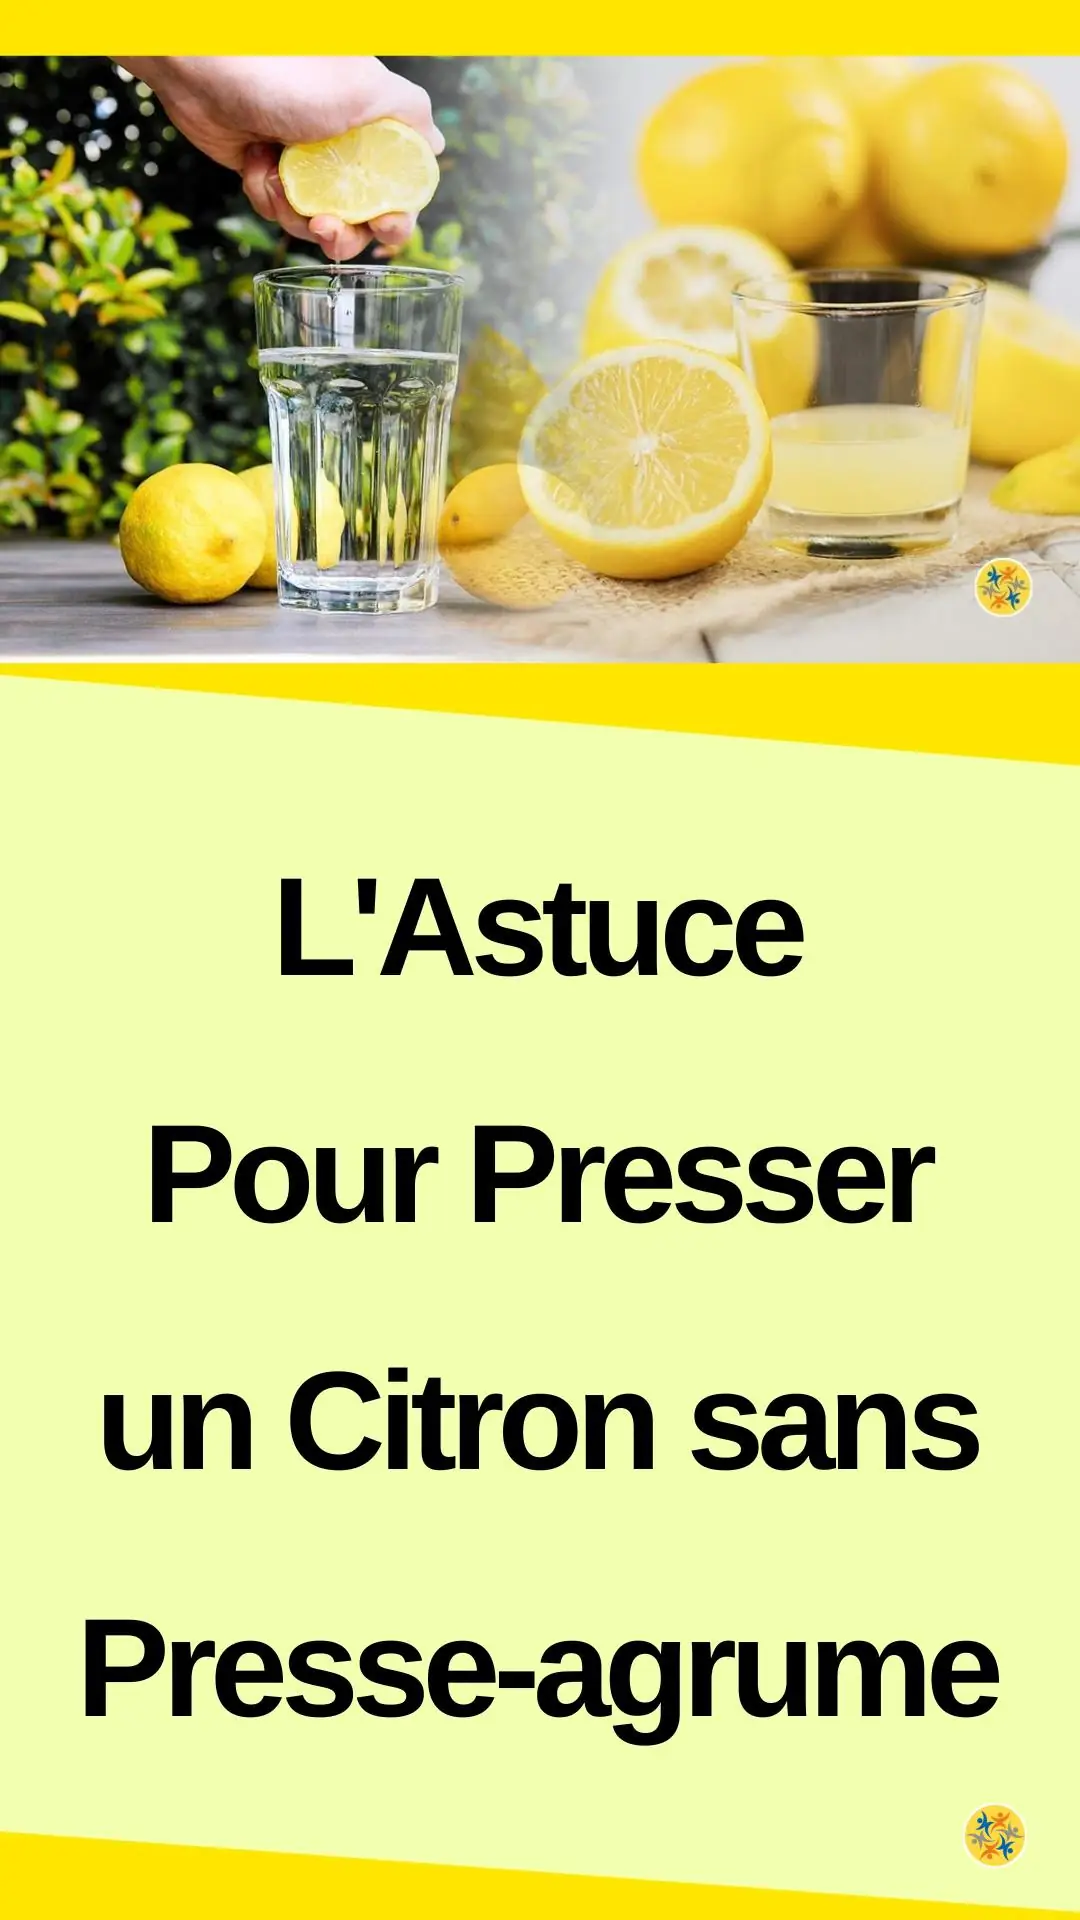 3 astuces pour presser du citron sans presse-citron : Femme Actuelle Le MAG